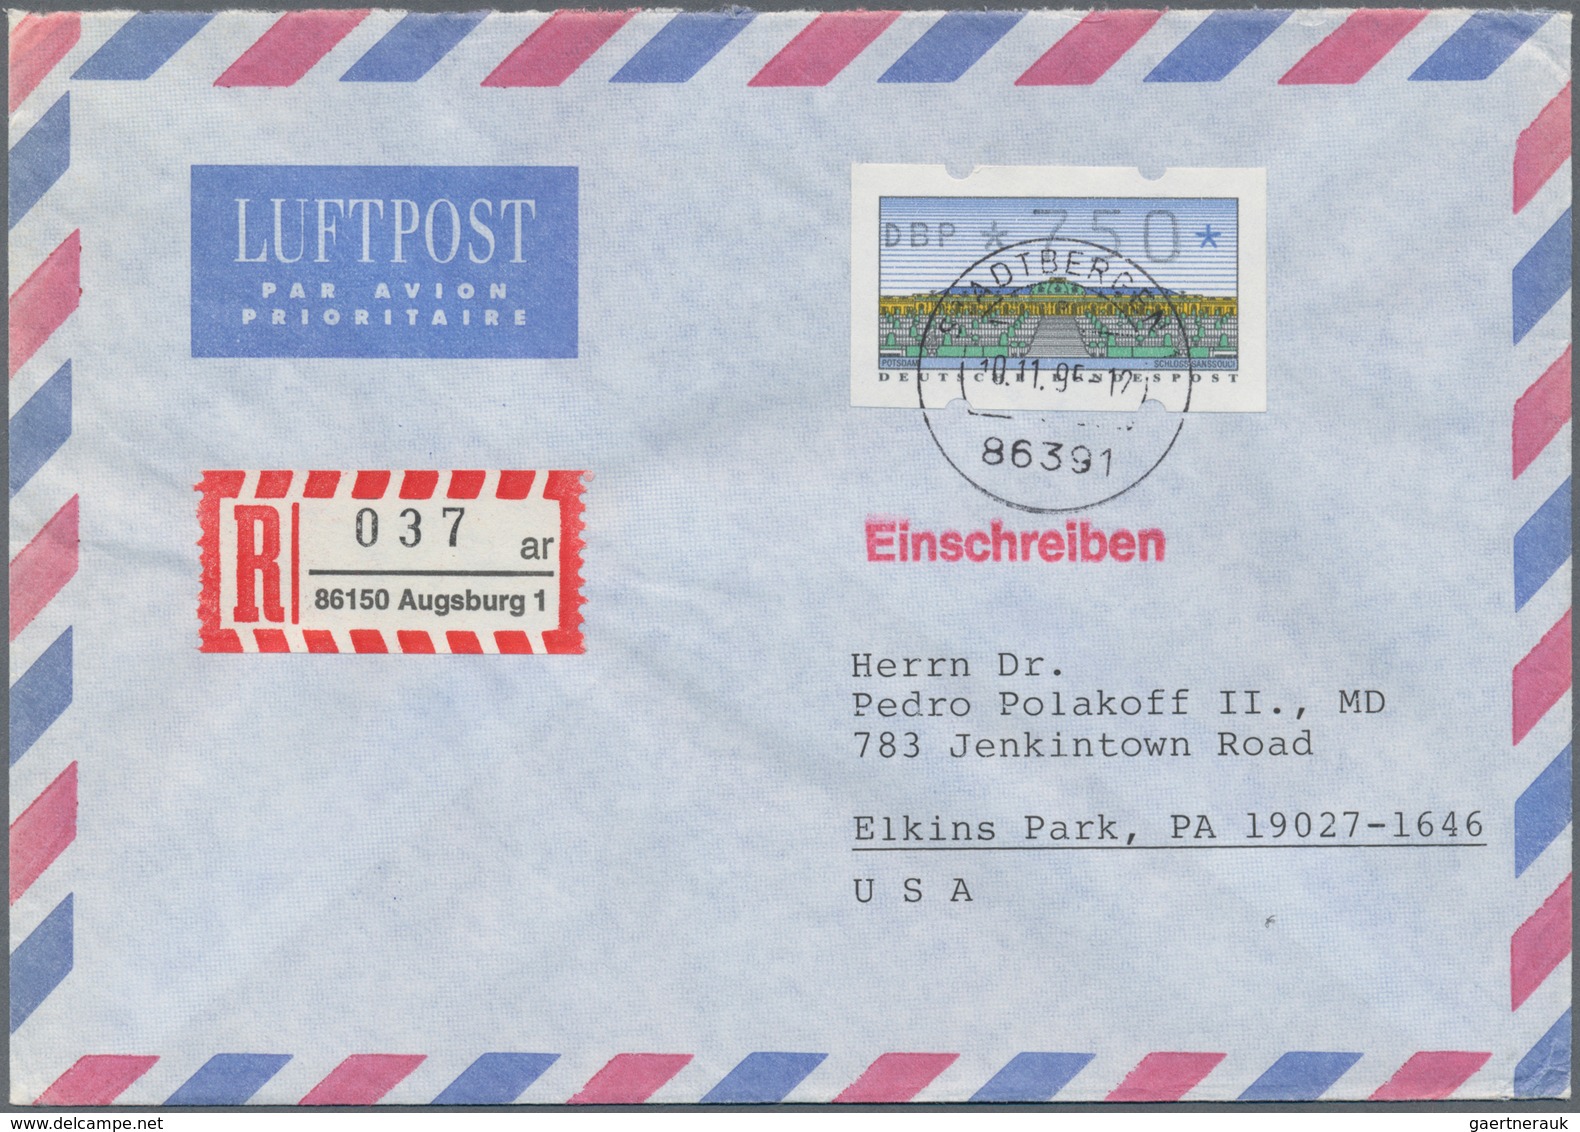 Bundesrepublik Deutschland: 1955/1998, Post nach Übersee, vielseitige Partie von ca. 69 Briefen und